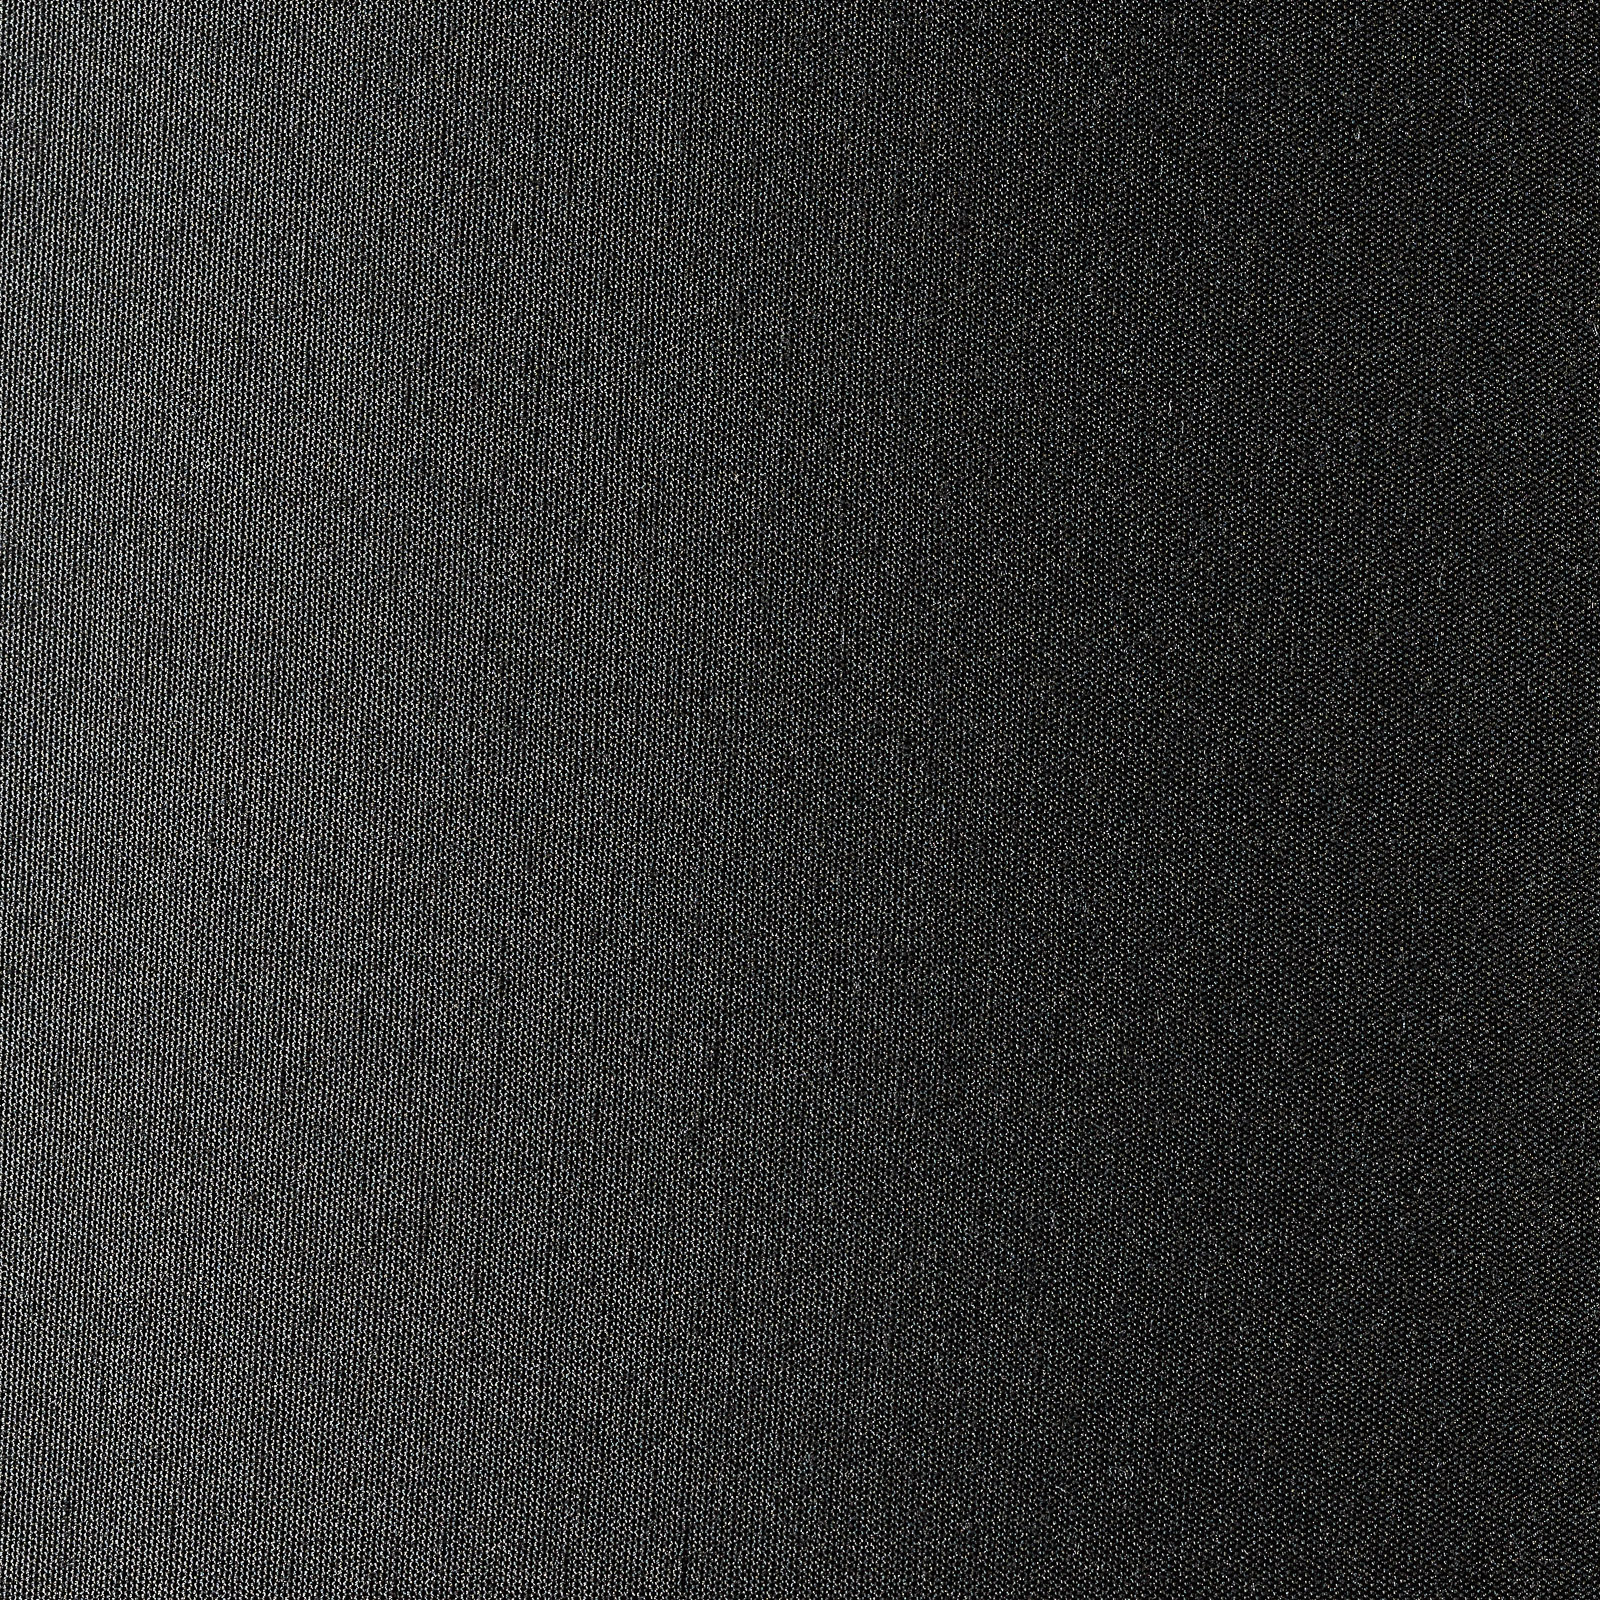 Textil-Hängeleuchte Lecio, 53 cm, schwarz